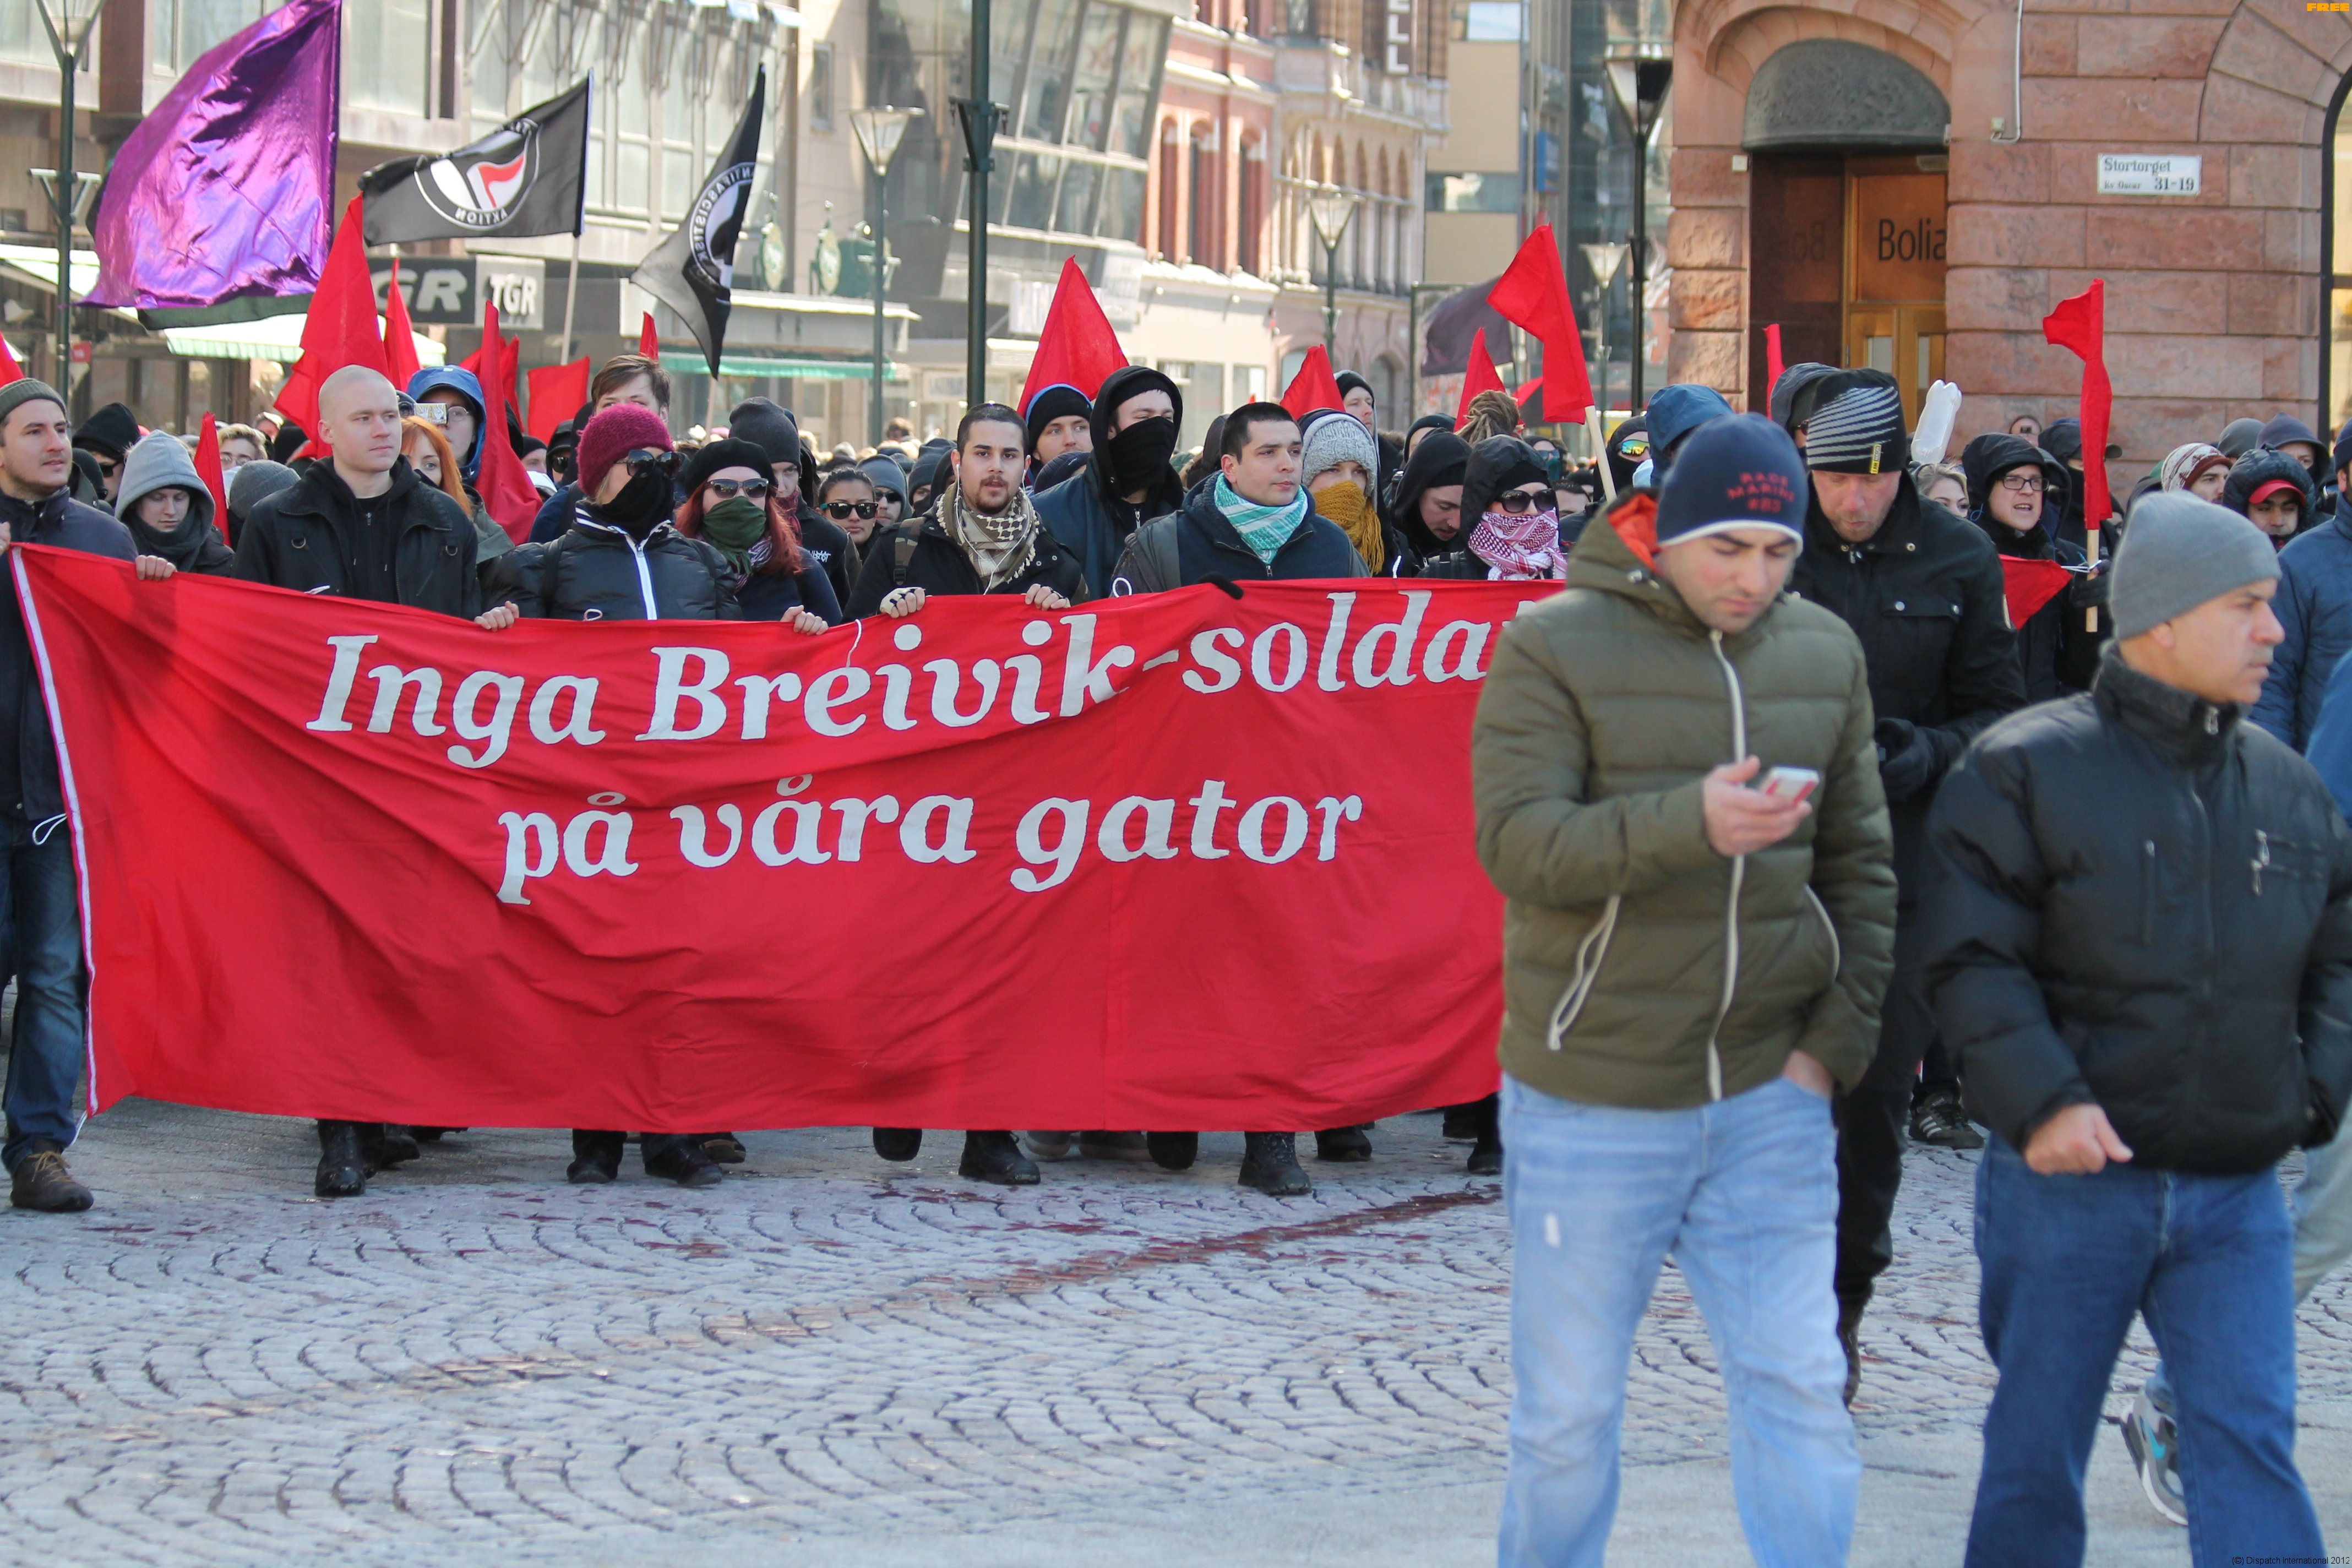 Malmö anti-SDL protest